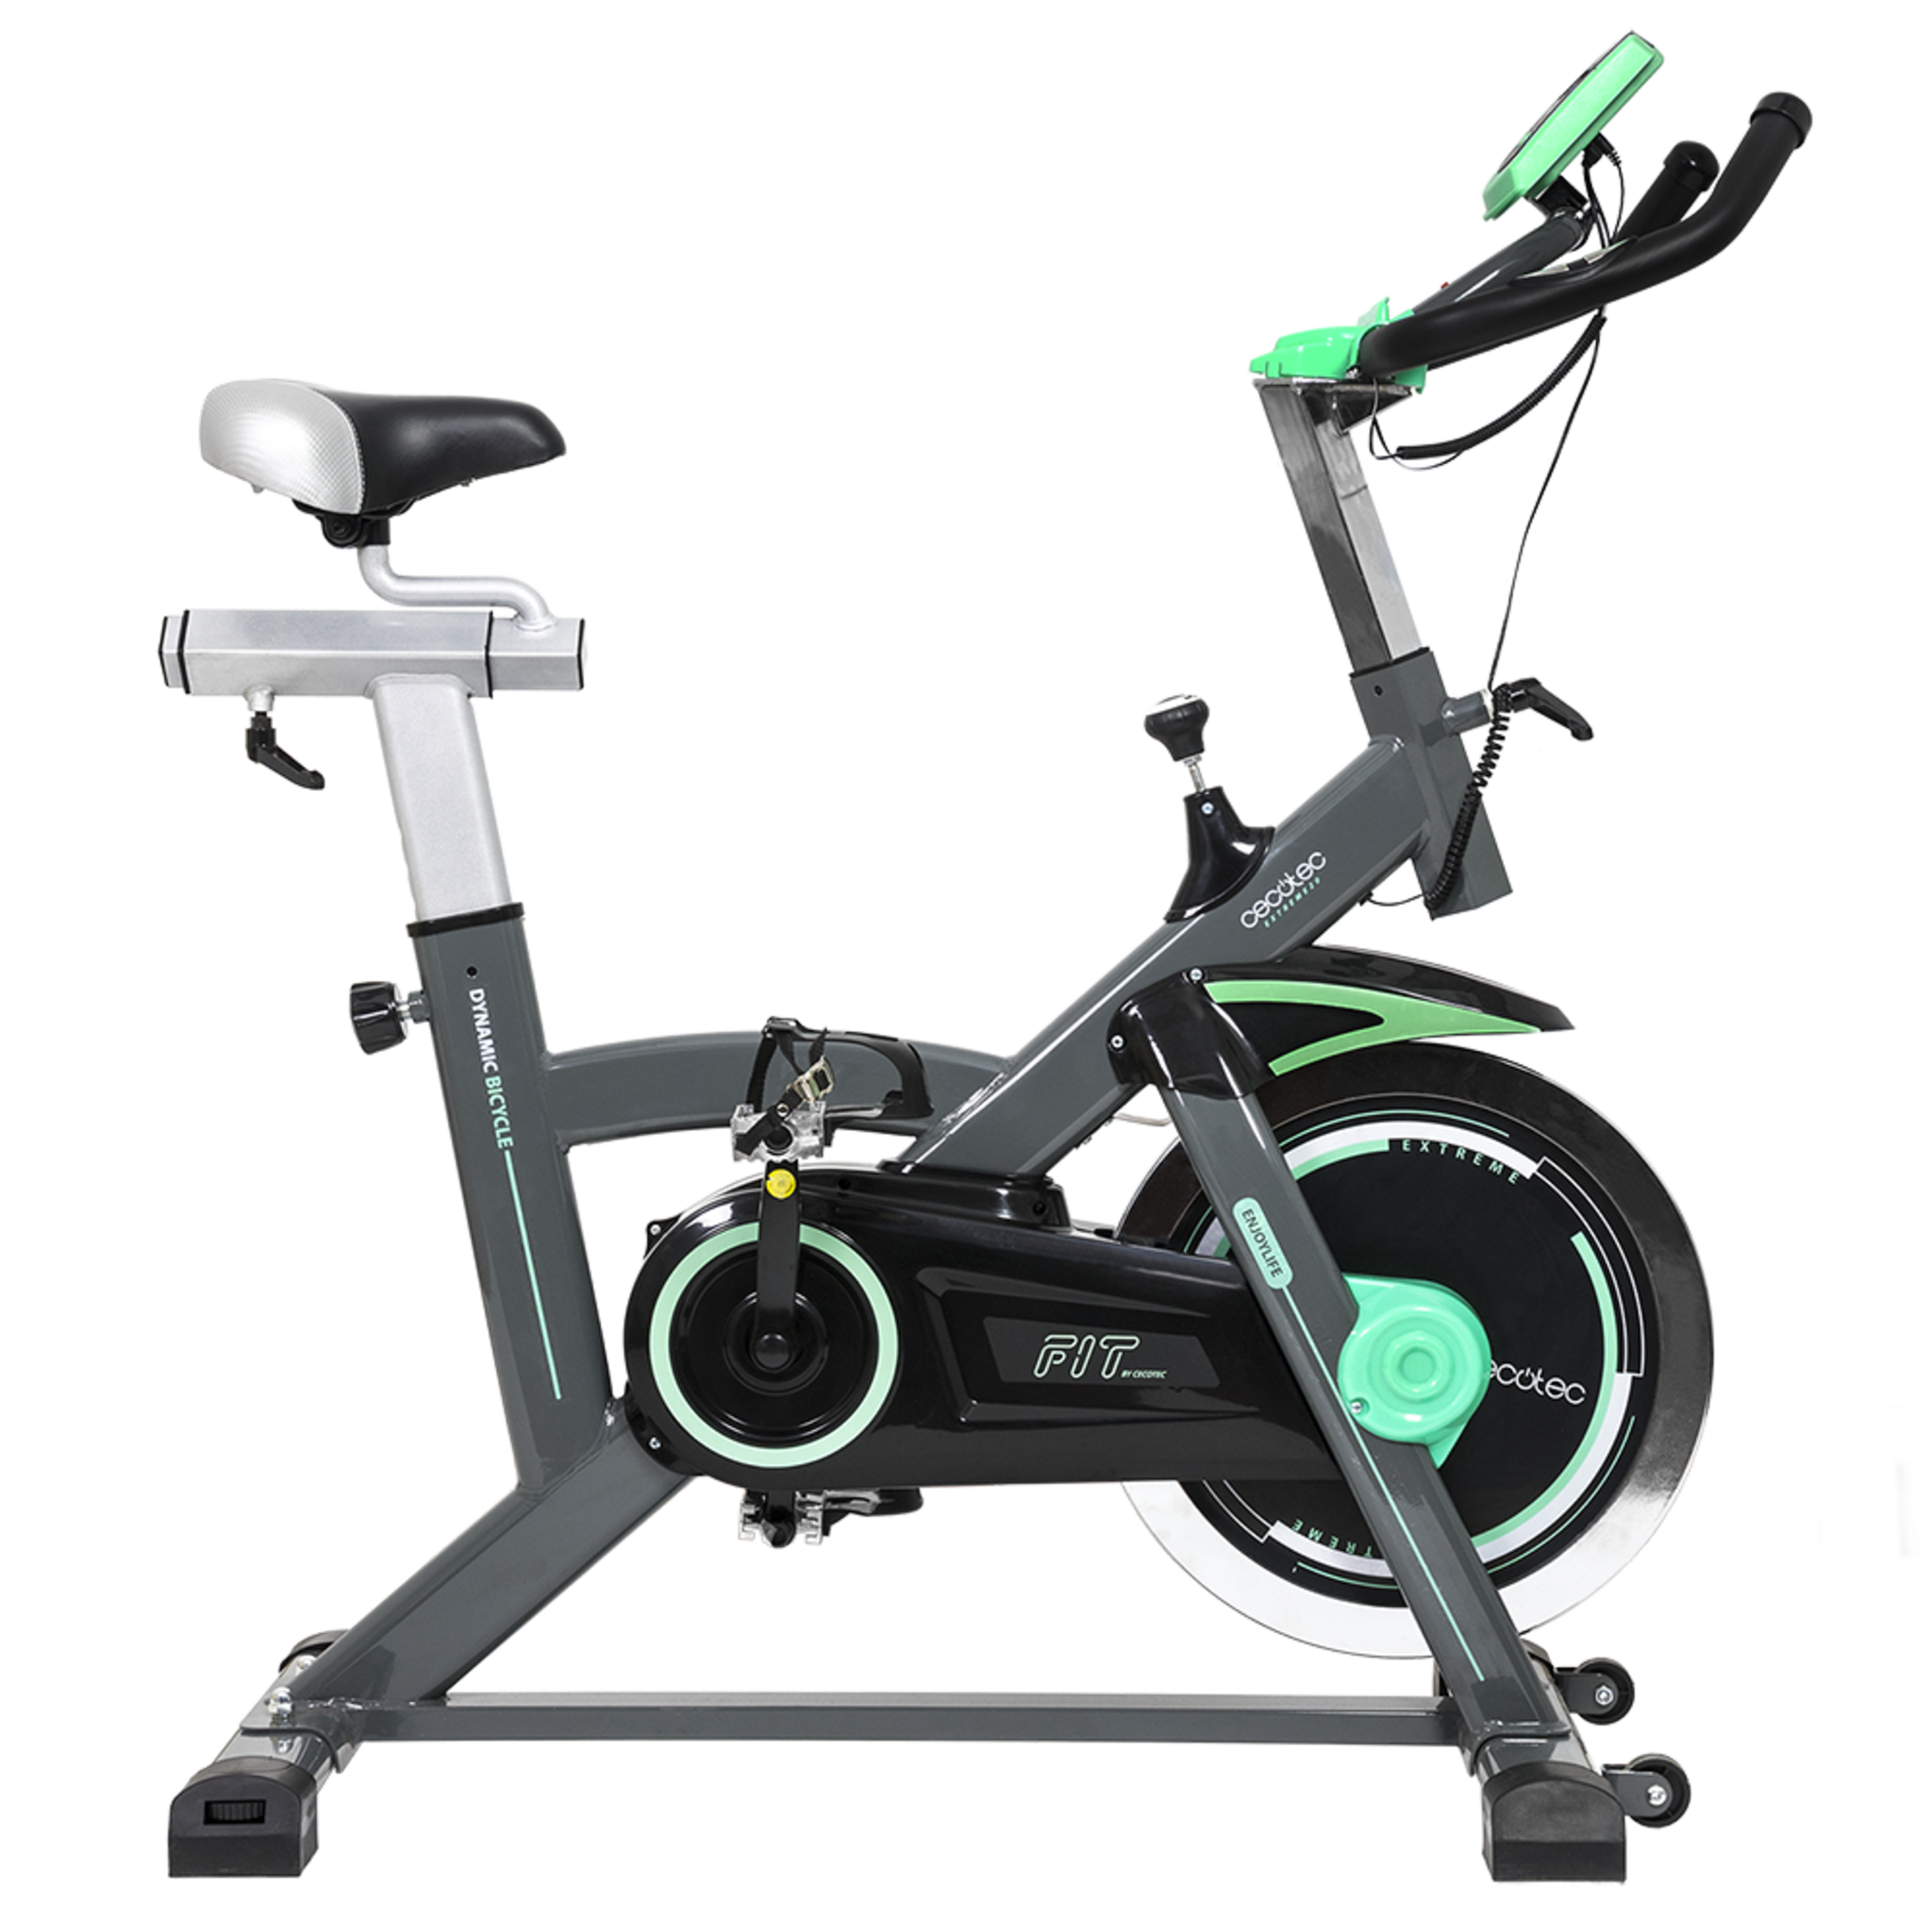 Bicicleta Spinning Estática con Volante de Inercia de 20 Kg Extreme 20. Sistema Silence Fit, Pulsómetro, Manillar y Sillín Regulable, Pantalla LCD, Ruedas, Peso máximo 120 Kg